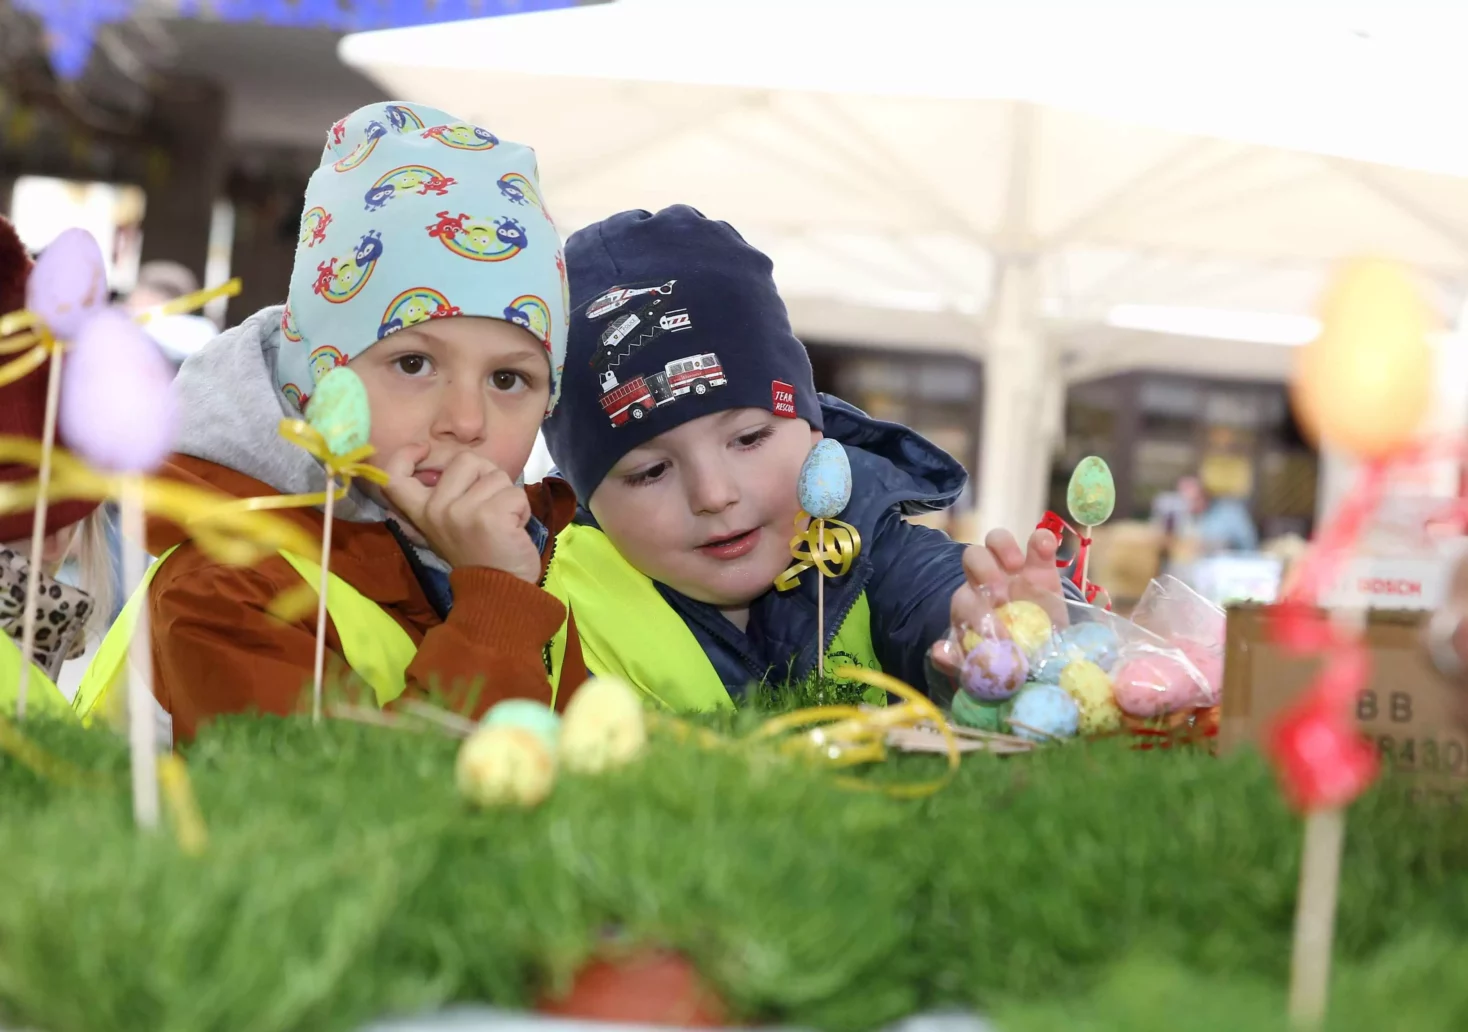 Foto in Beitrag von 5min.at: Zu sehen sind Kinder, die sich ganz offensichtlich schon auf Ostern freuen.